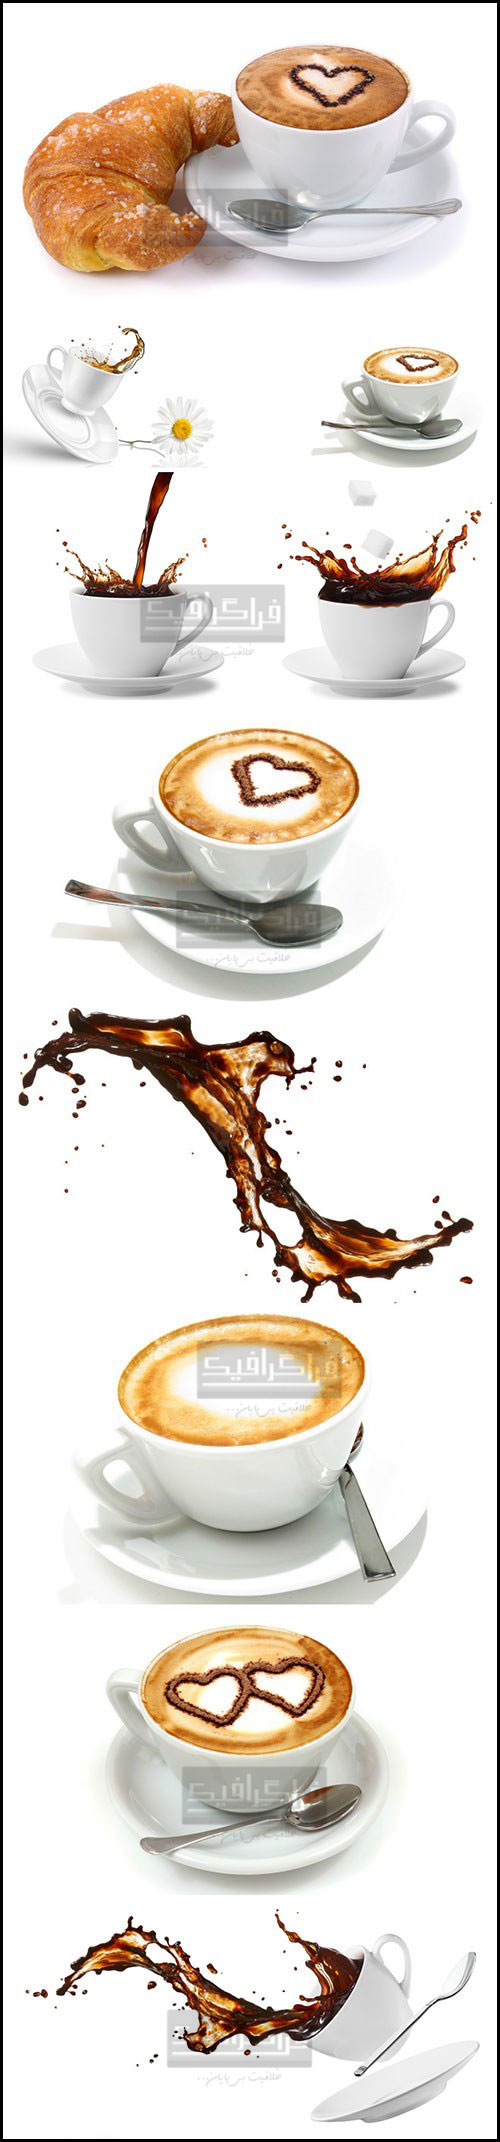 دانلود تصاویر استوک فنجان قهوه در حال پاشیدن